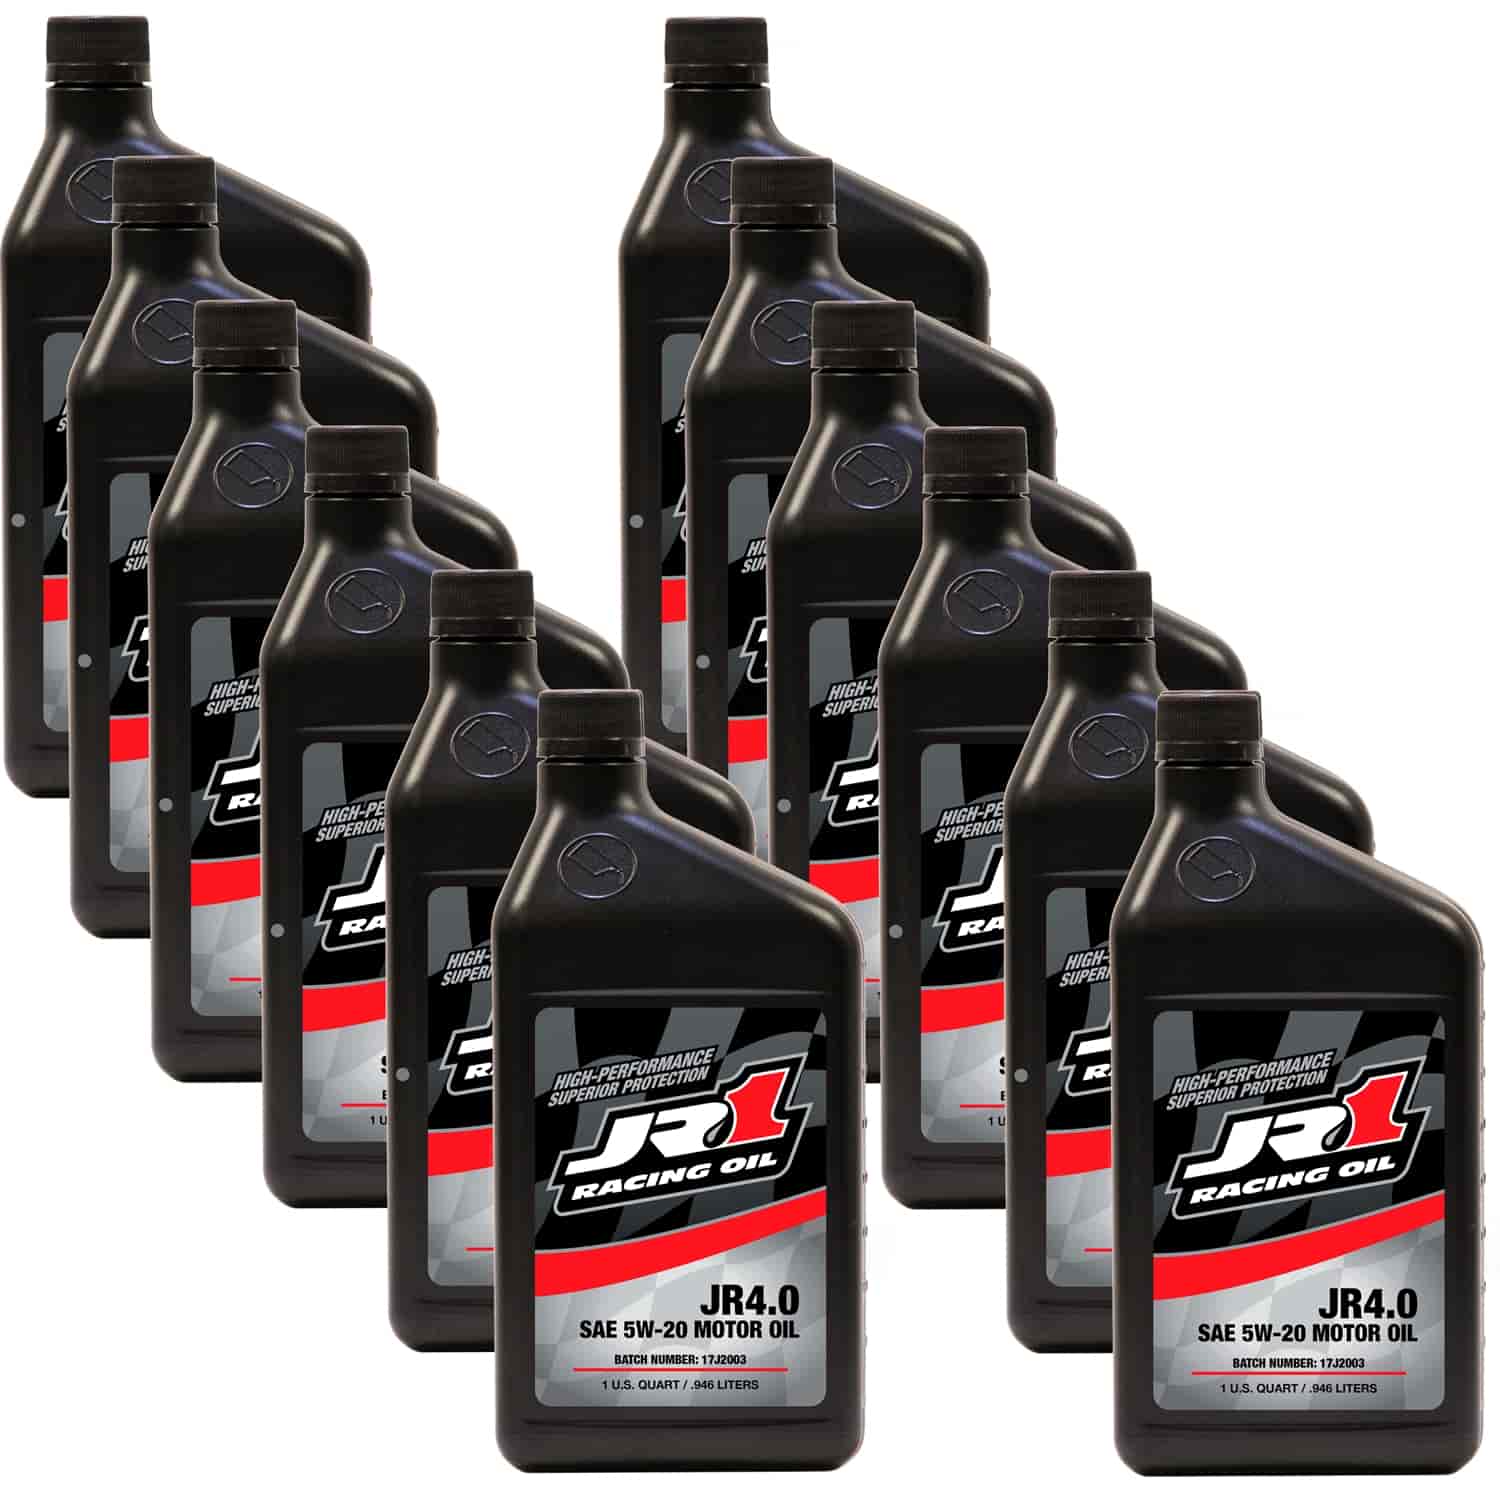 JR 4.0 5W20 Synthetic Race Oil 12 Quarts